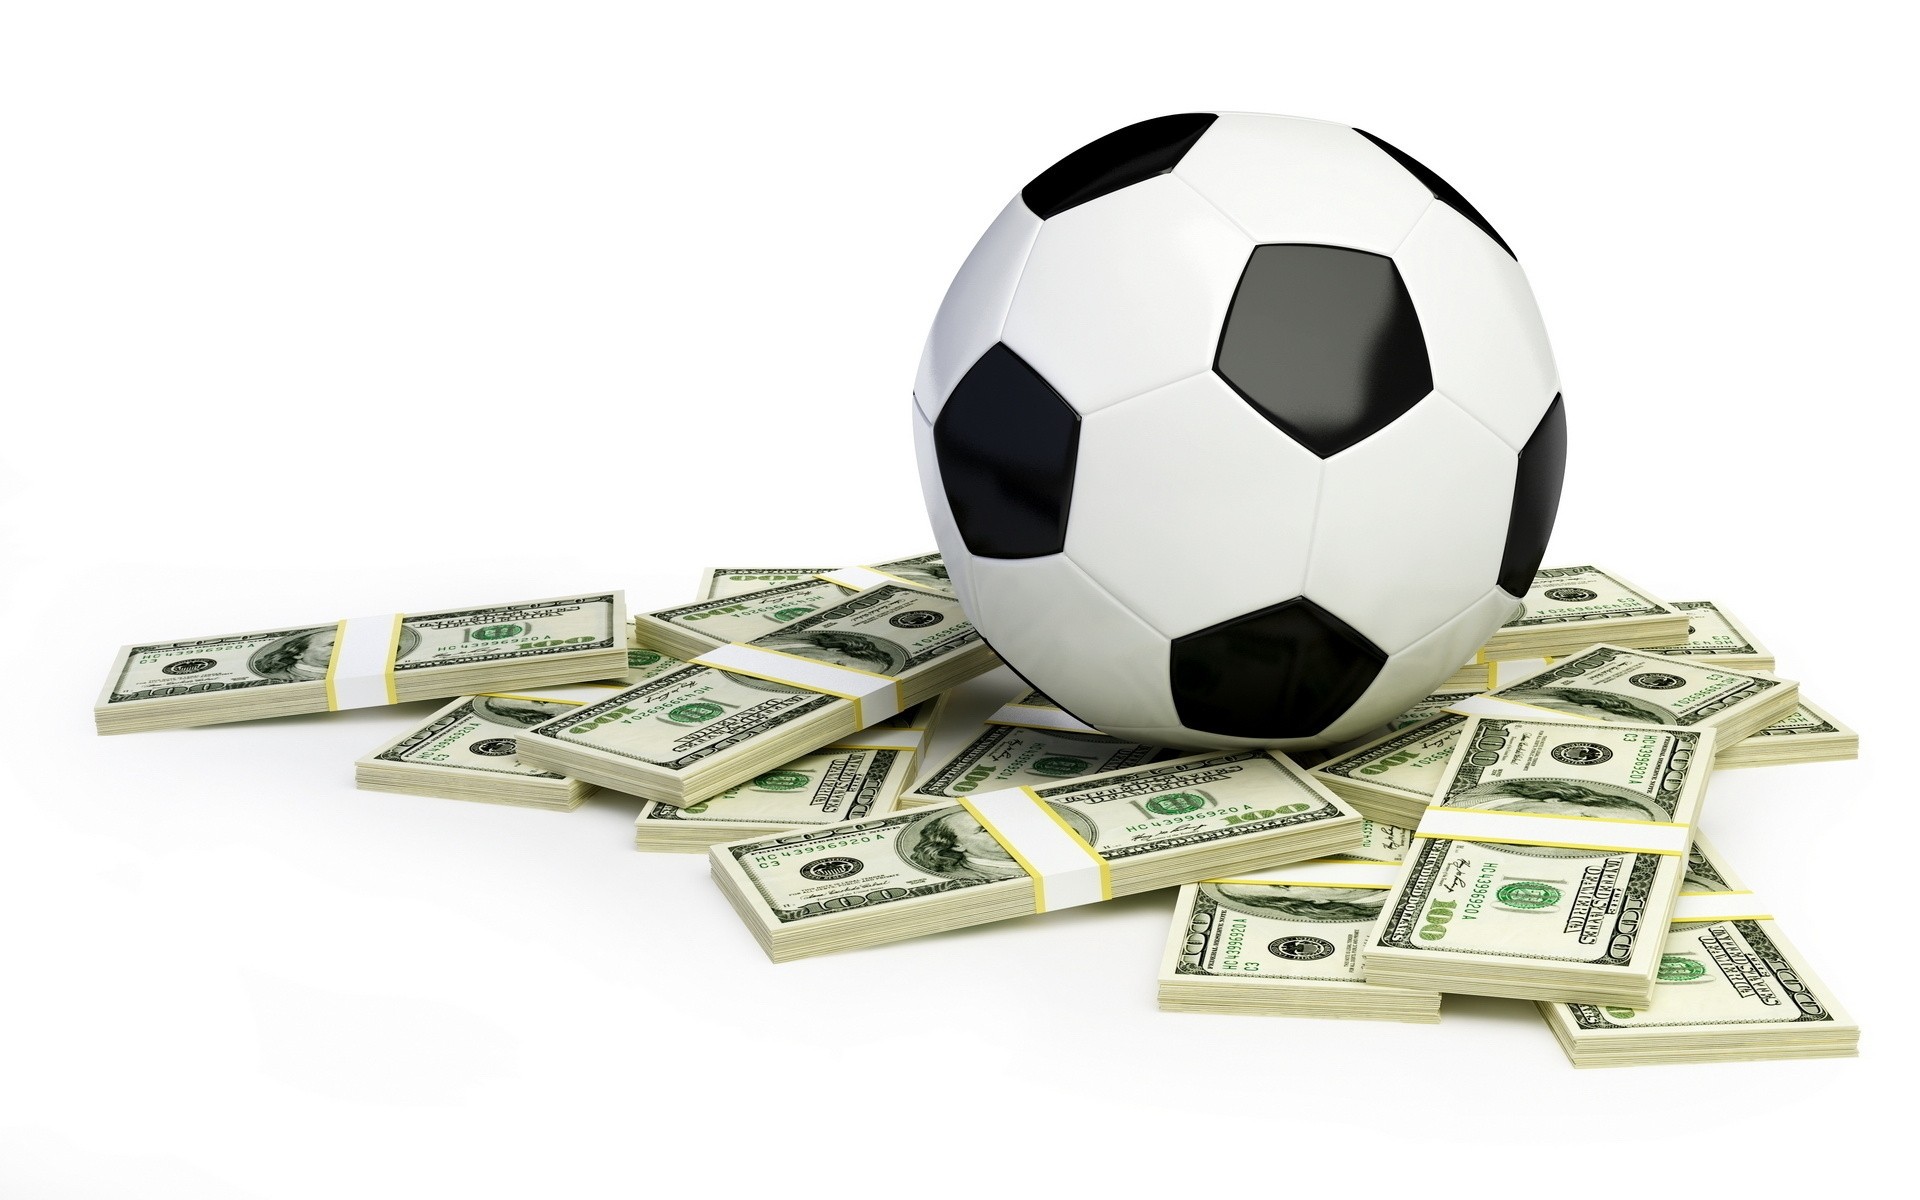 футбол игры деньги рабочего стола футбол успех бизнес финансы кожа евро играть символ мяч богатство показать бумага награда наличными долларов фон